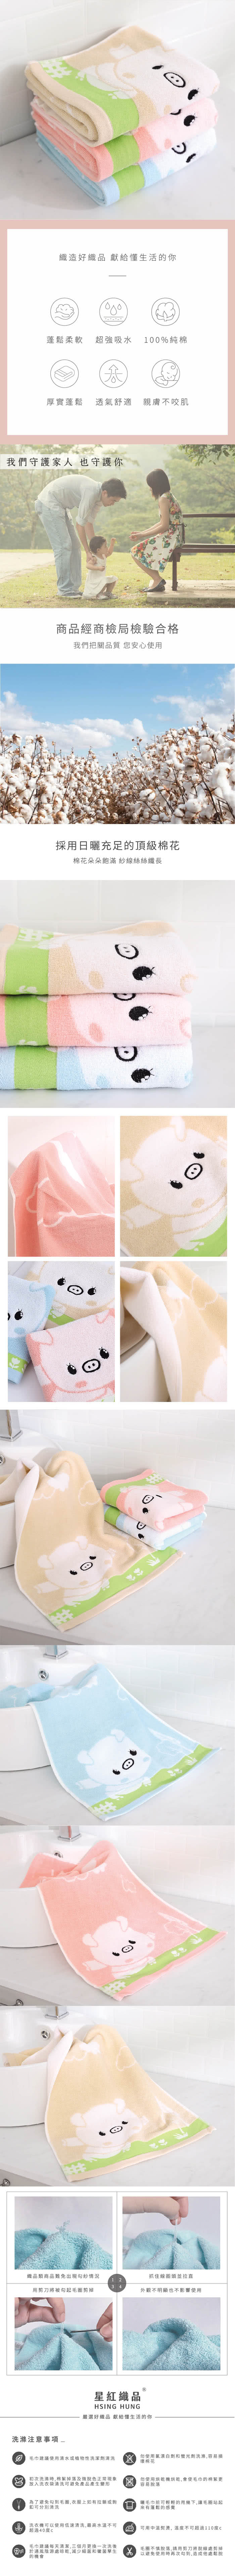 星紅織品 可愛小豬圖案純棉毛巾-3入組(藍色/粉色/咖啡色 